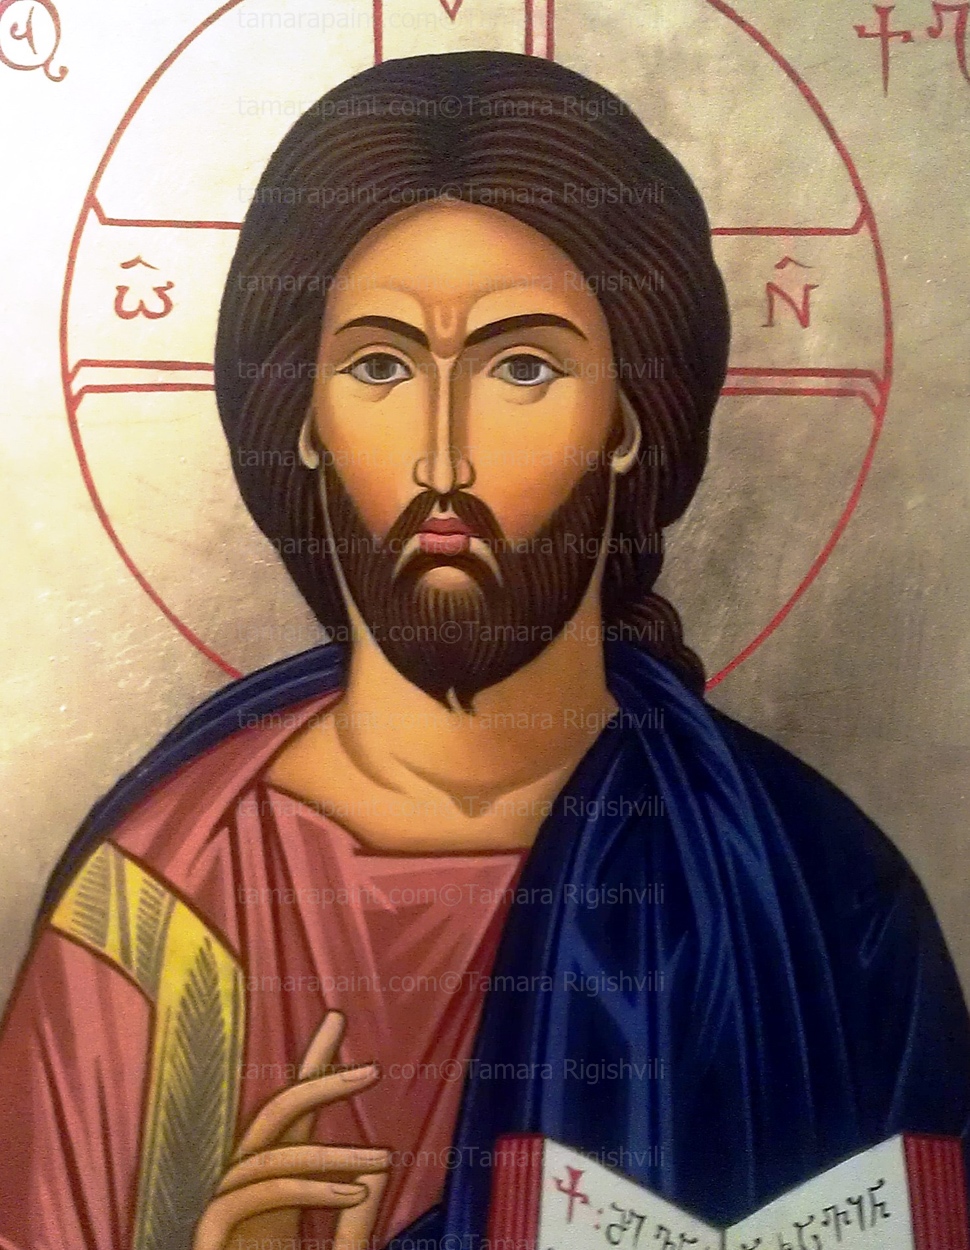 Christ the saviour, original icon painting by artist Tamara Rigishvili